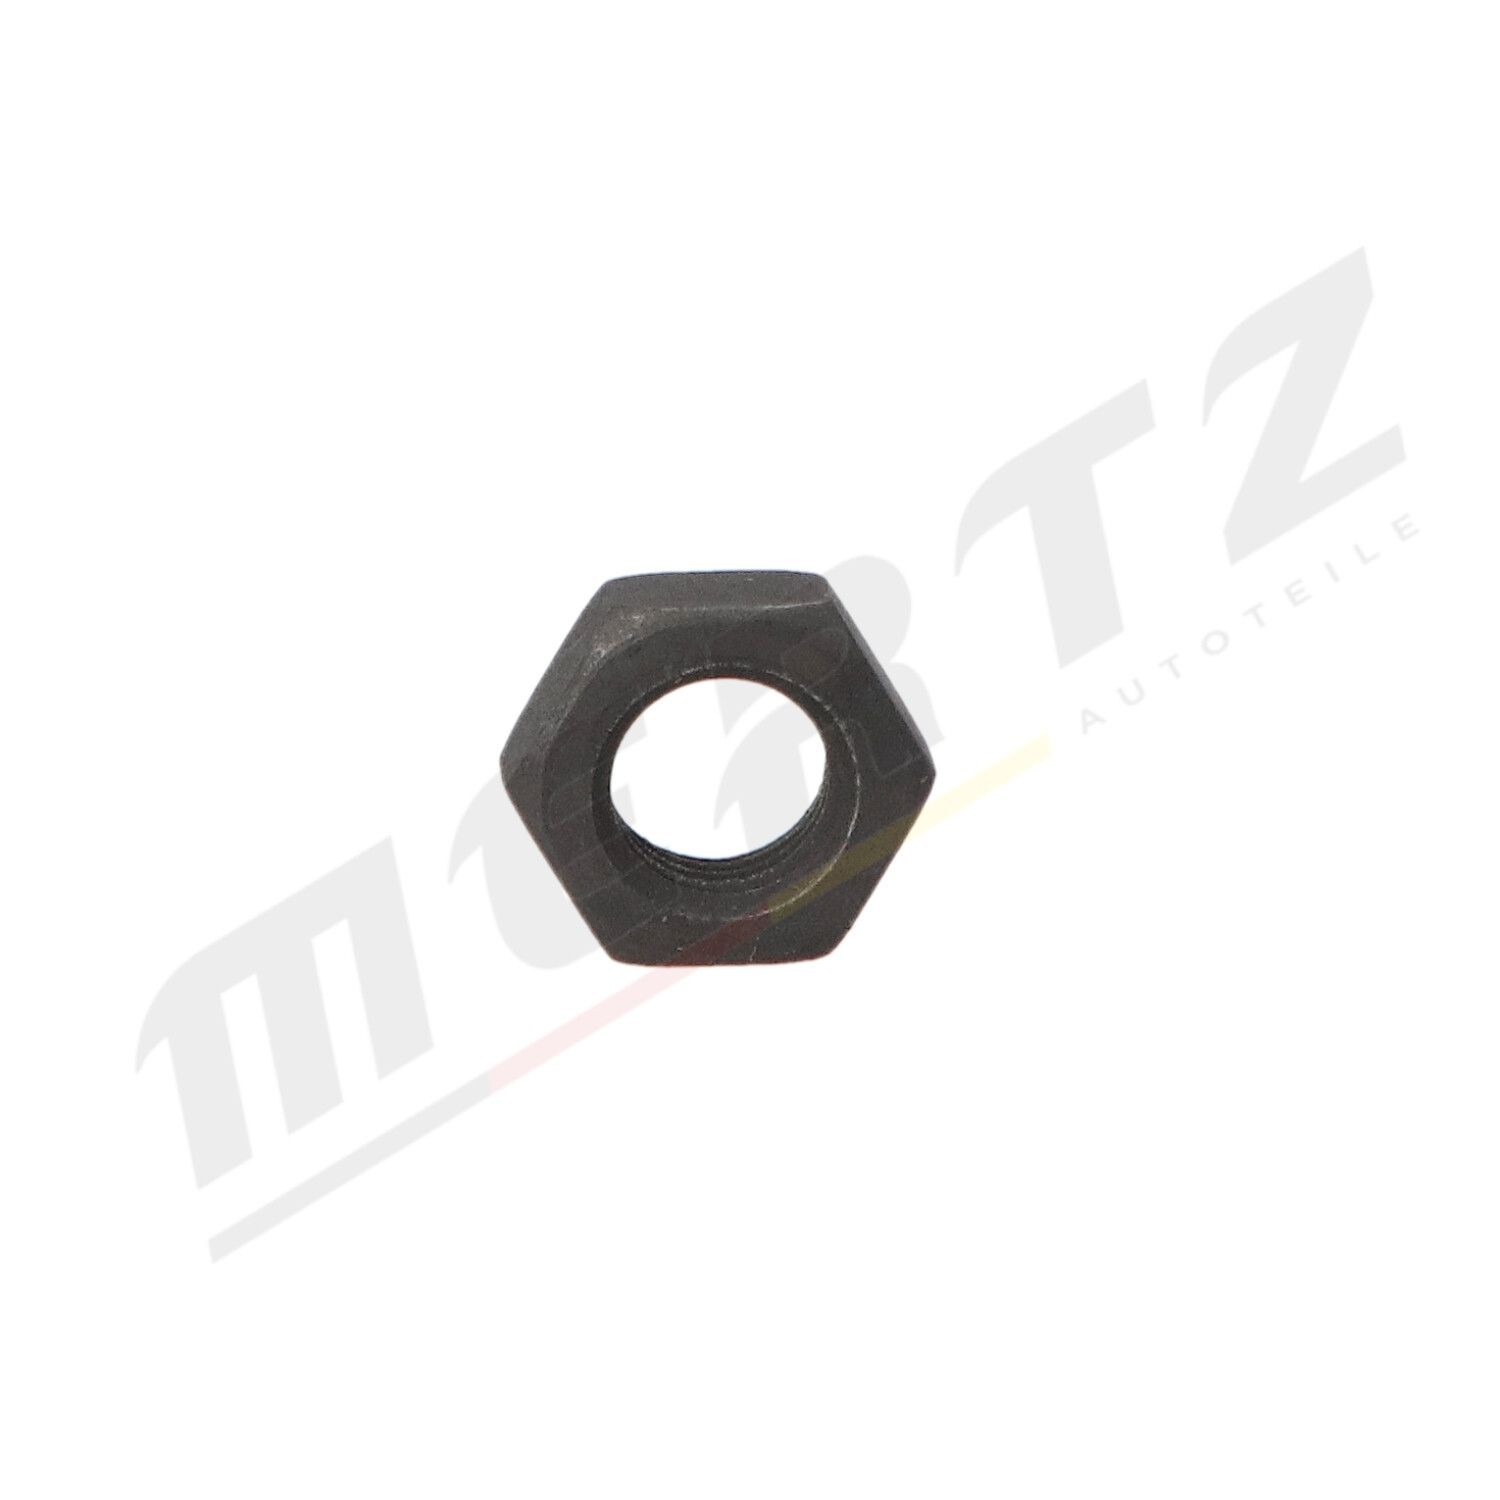 MERTZ Track rod end ball joint M-S0362 buy online